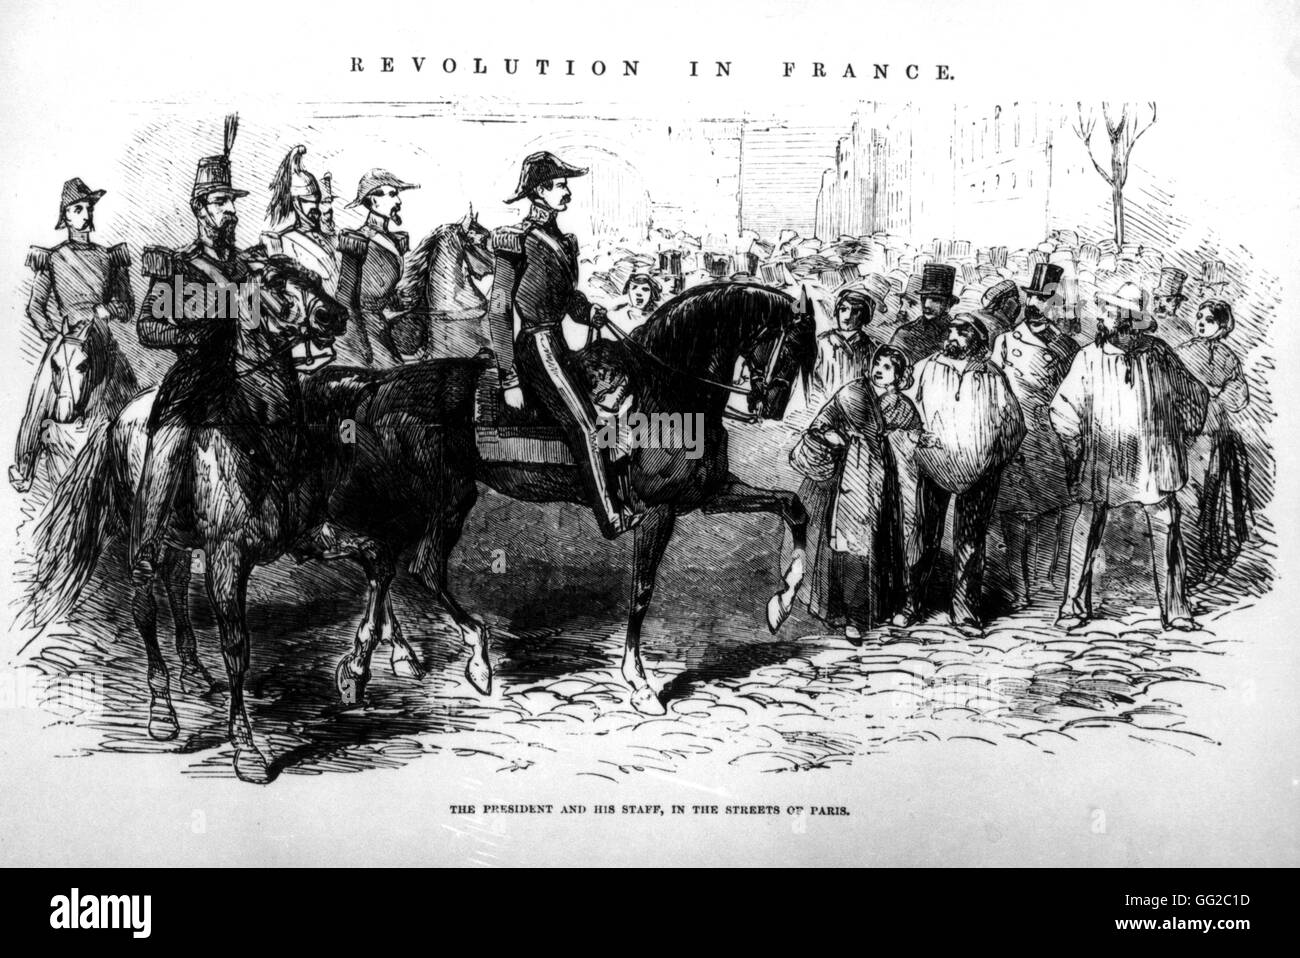 Le Président Louis Napoléon Bonaparte dans les rues de Paris avec son personnel, après son coup d'État. 2 décembre 1851 France Banque D'Images